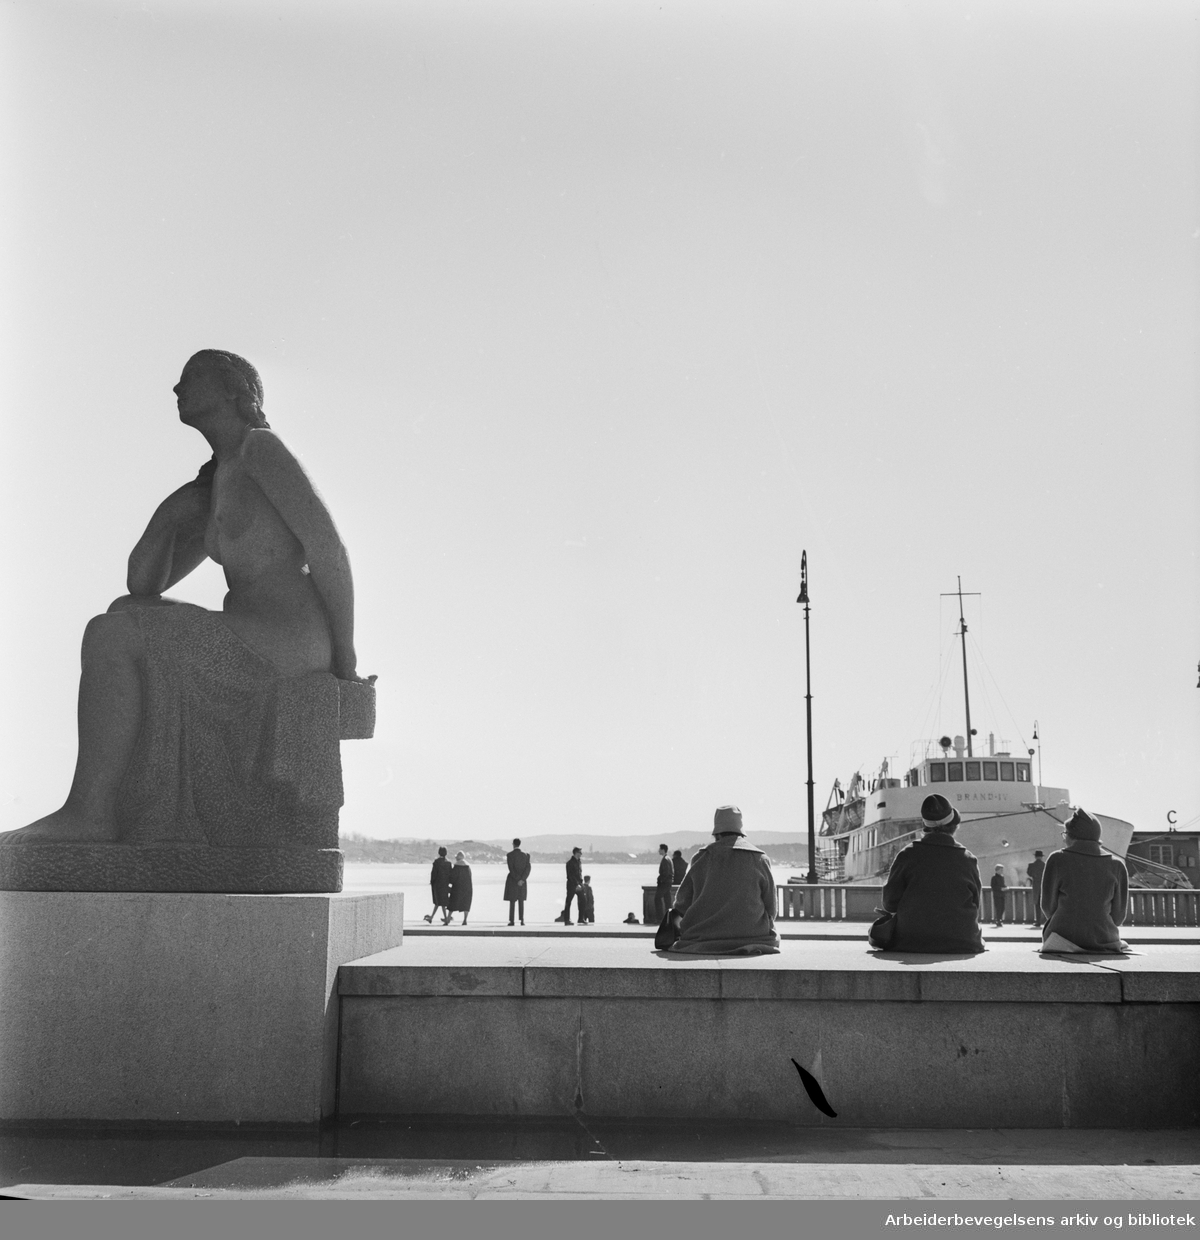 Vårstemning på Rådhusplassen i Oslo. M/S Brand VI ligger til kai. Til venstre: Emil Lies skulptur av sittende kvinne, reist 1954-58. 24. April 1962.